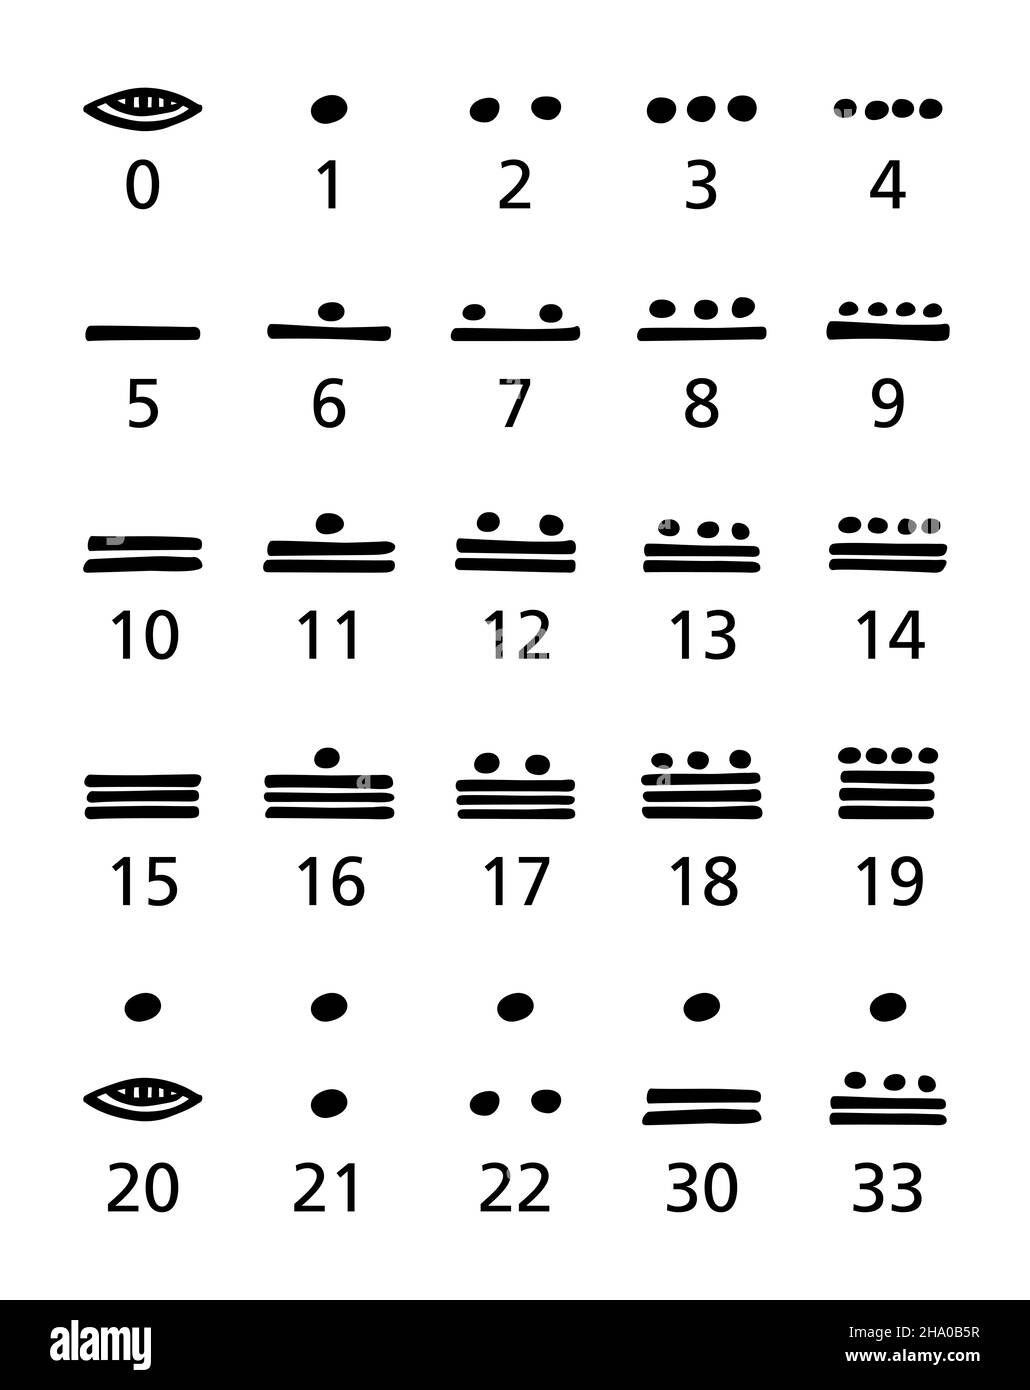 Chiffres Maya, noir et blanc.Vigesimal, système de vingt chiffres mayas pour représenter les nombres et les dates de calendrier dans la civilisation maya. Banque D'Images